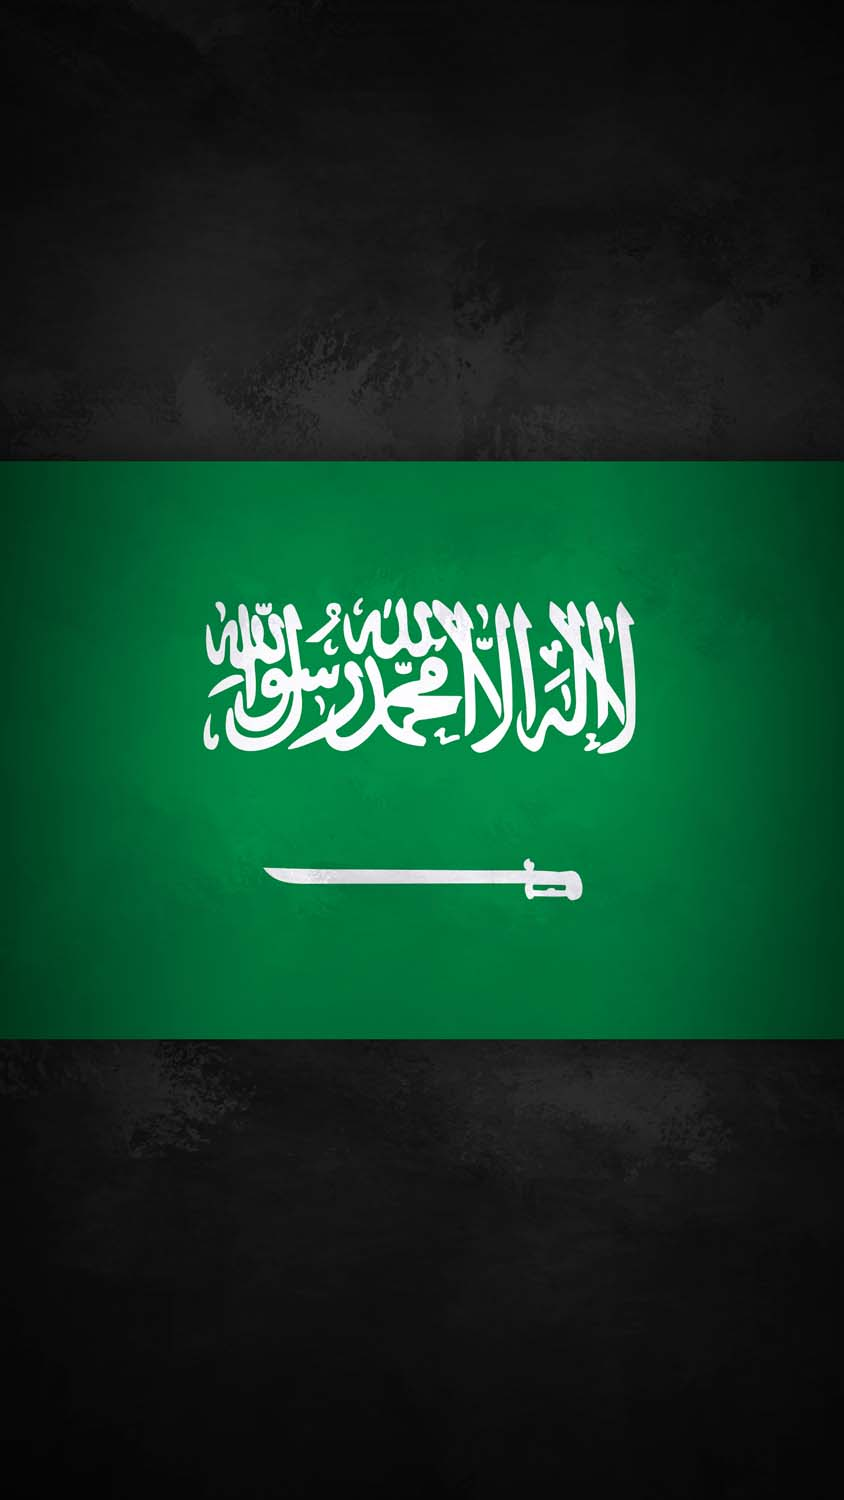 Saudi Arabia Flag iPhone Wallpaper 4K  iPhone Wallpapers